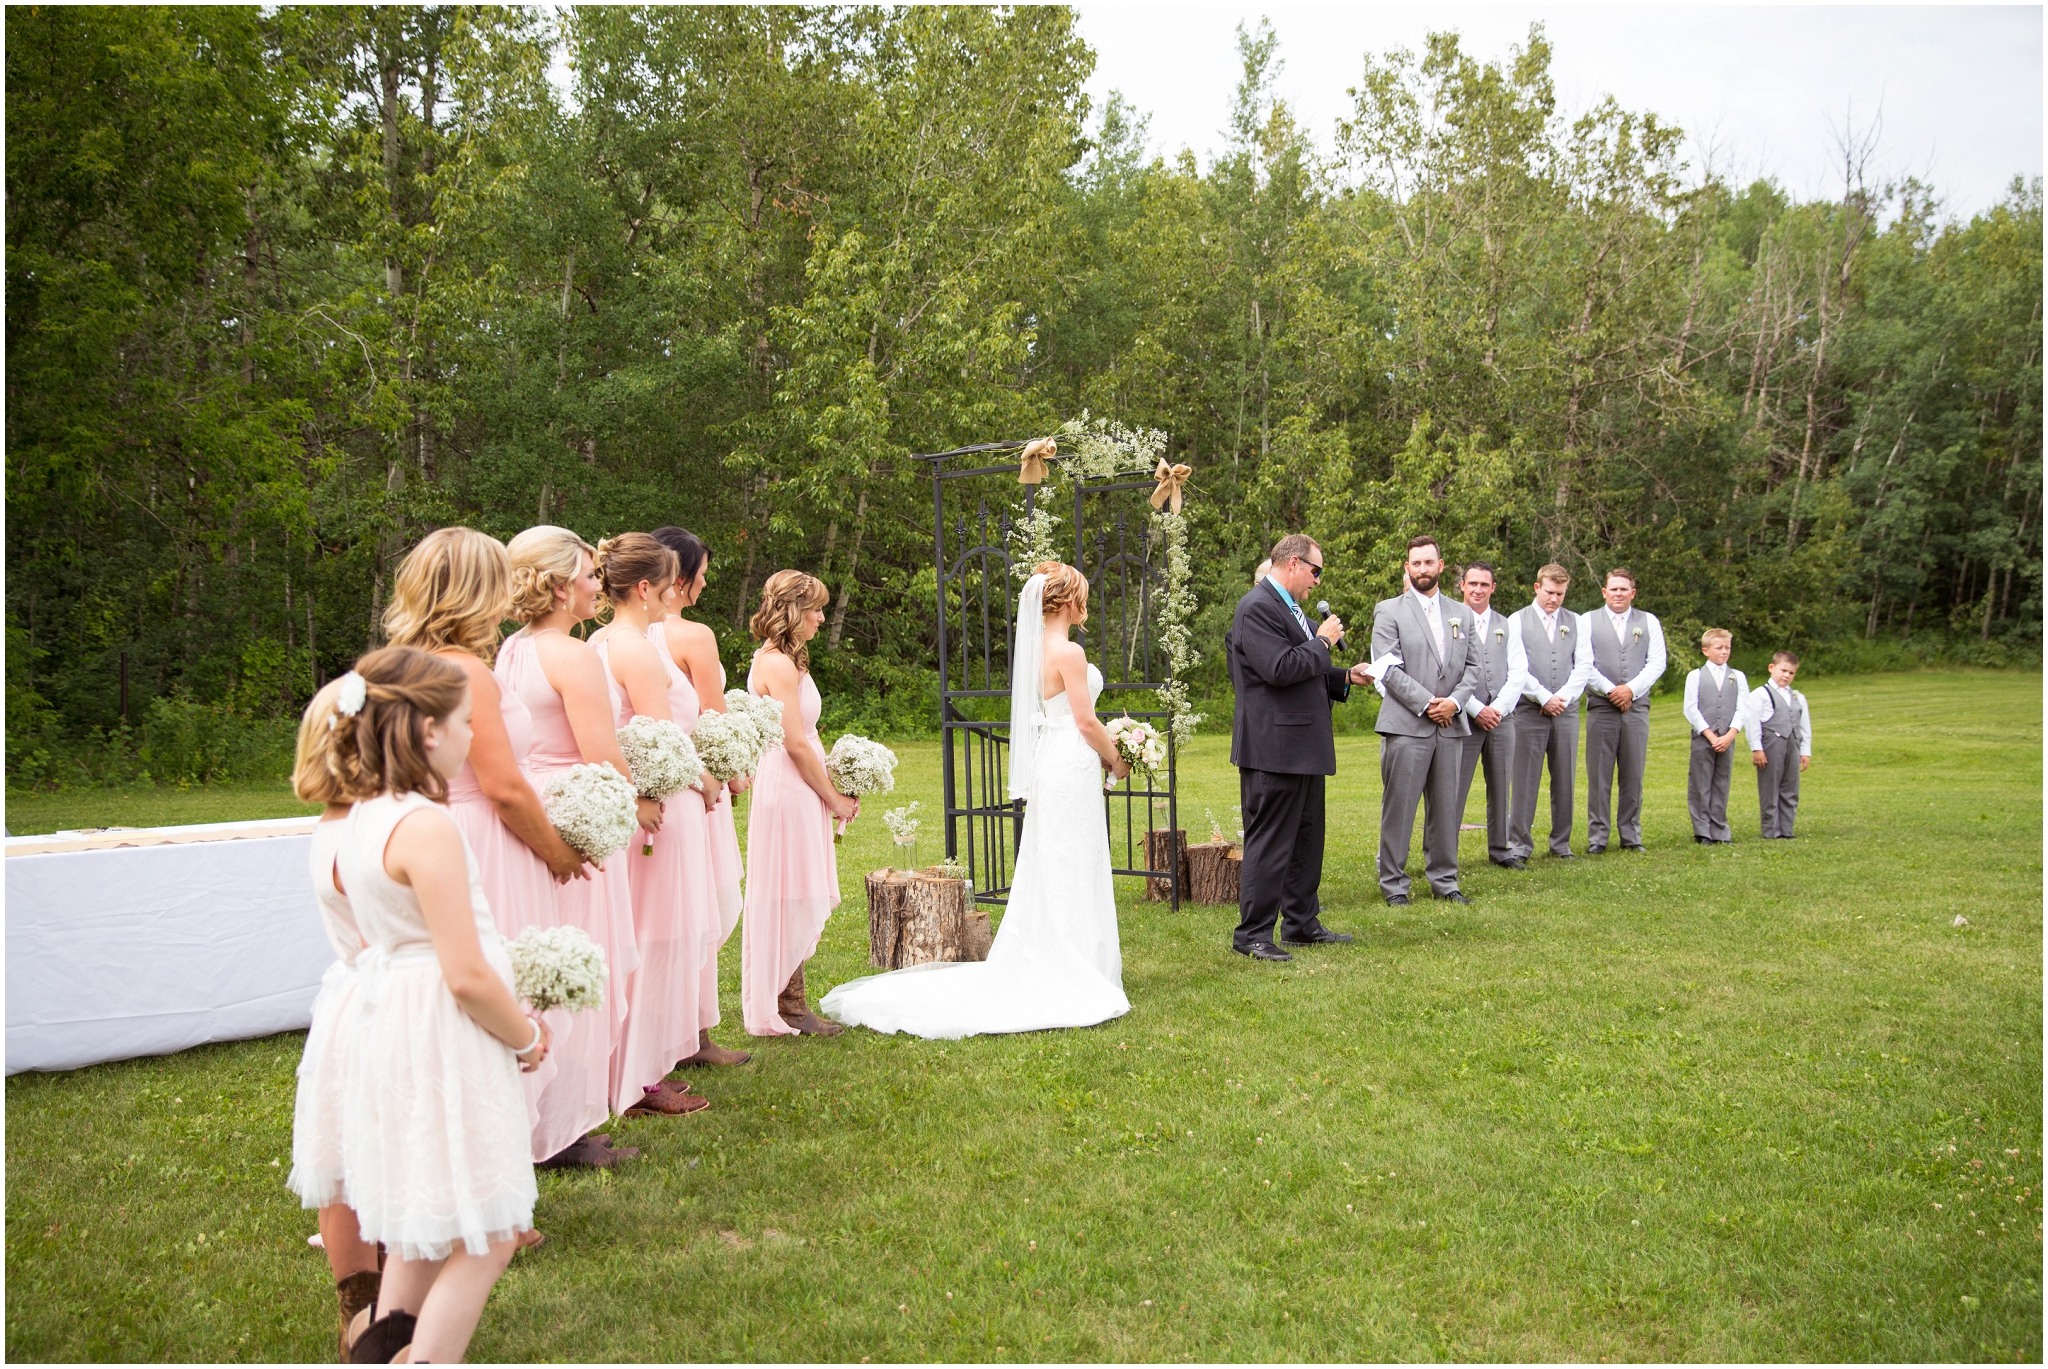 ots edmonton outdoor wedding ceremony photos